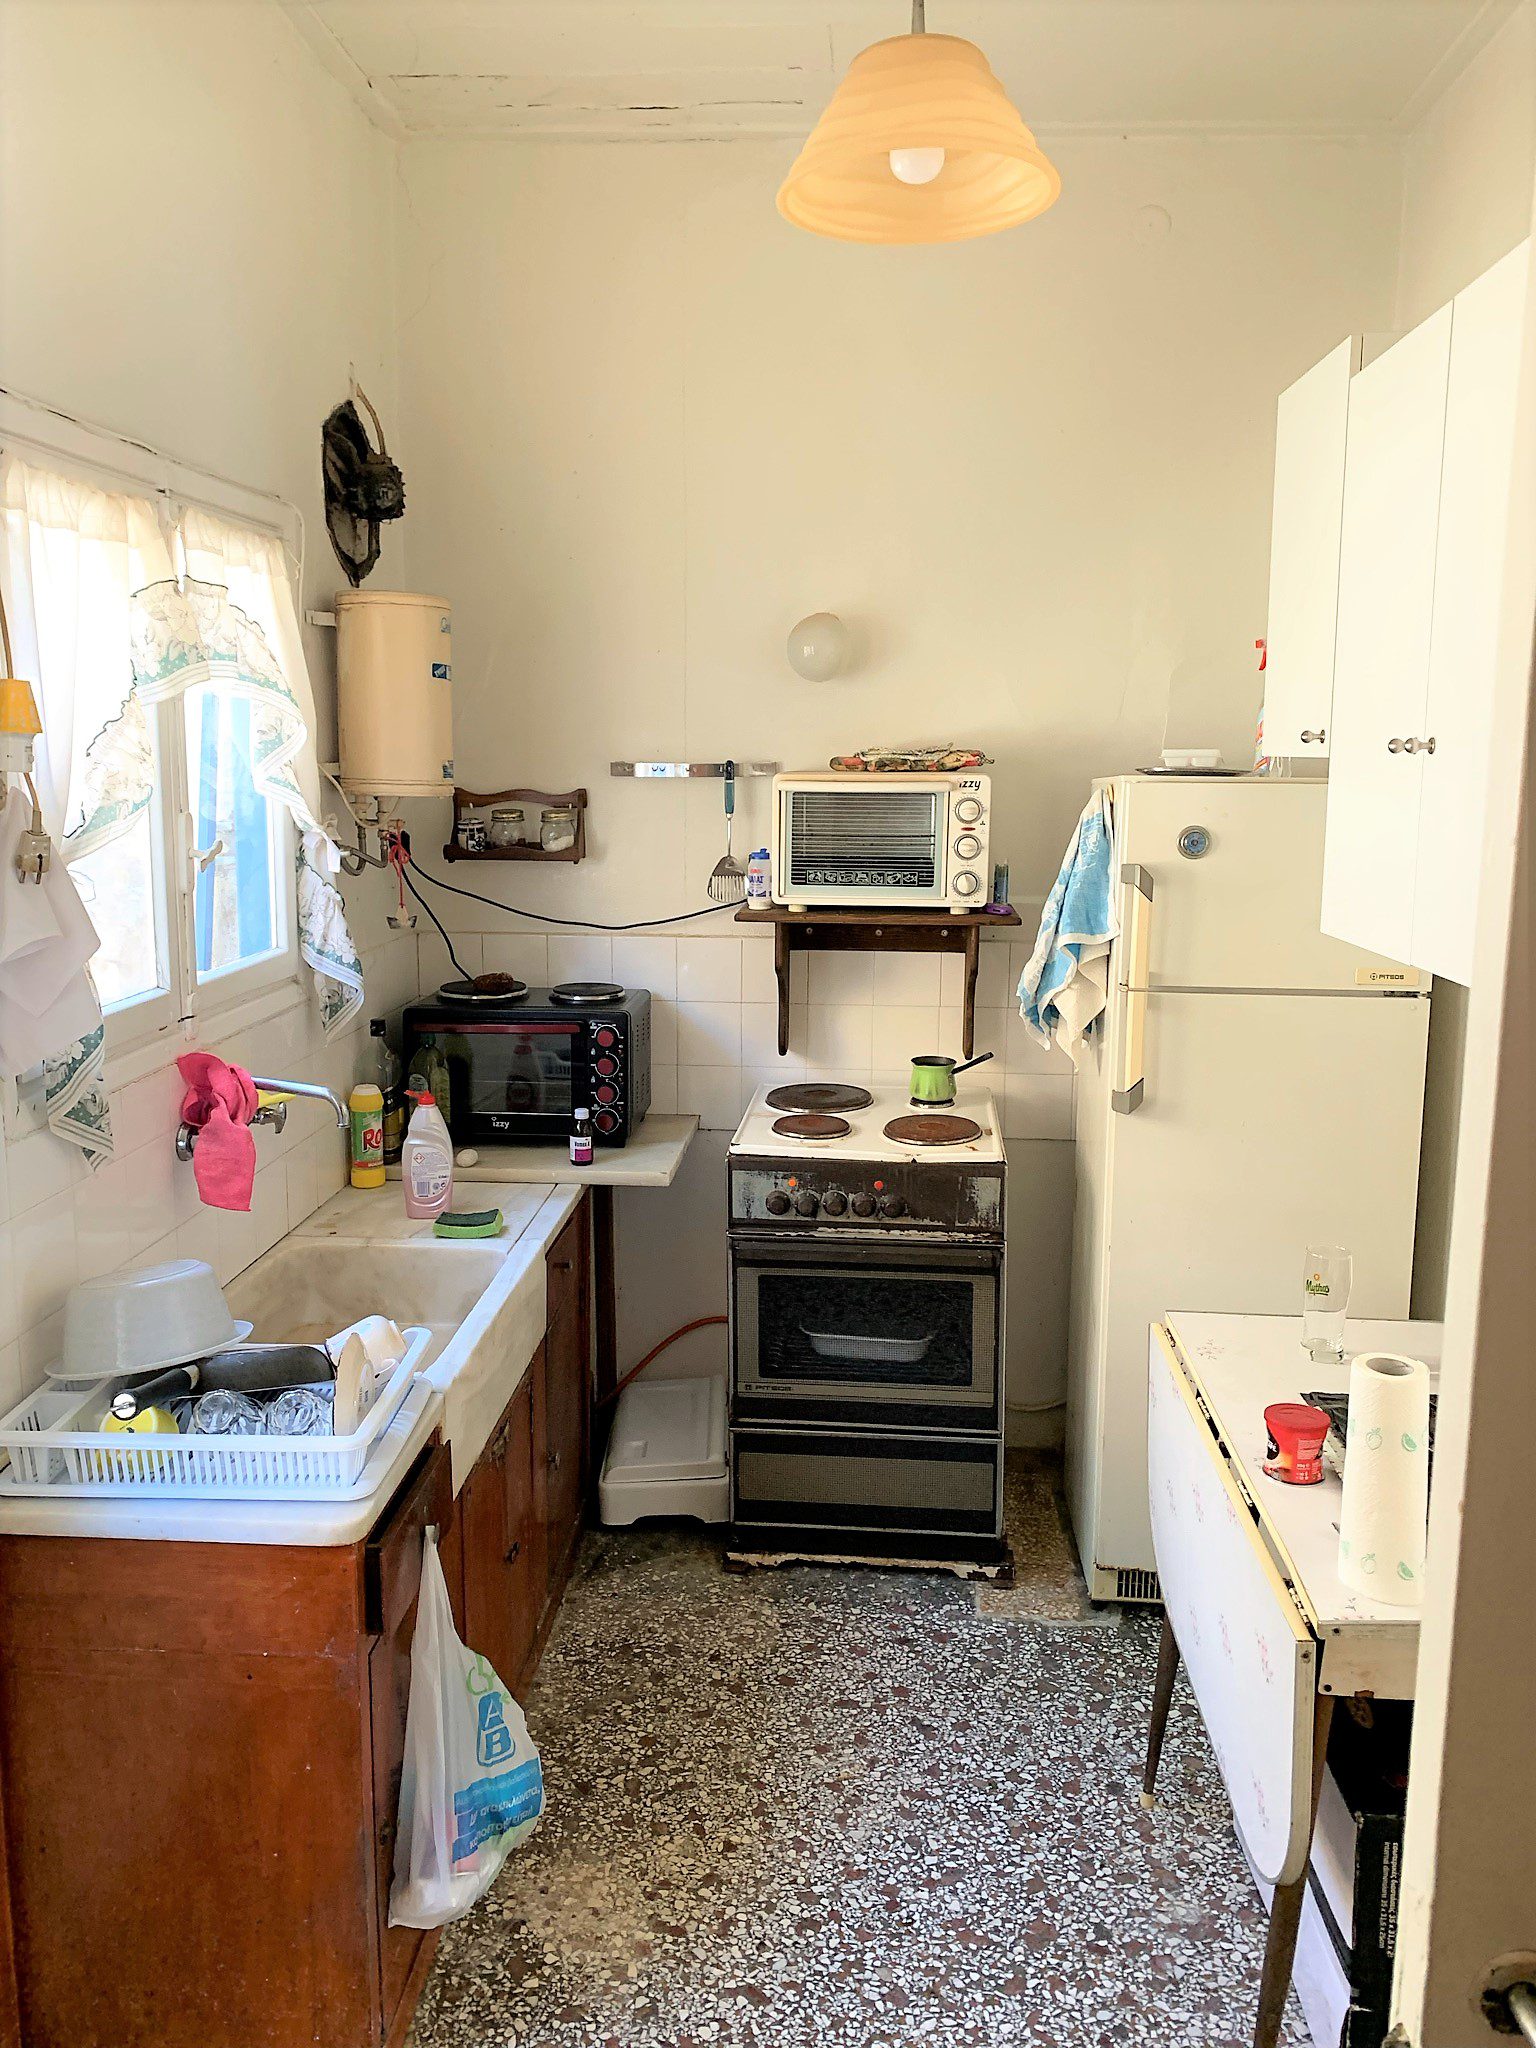 Κουζίνα κατοικίας προς πώληση Ιθάκα Ελλάδα, Βαθύ